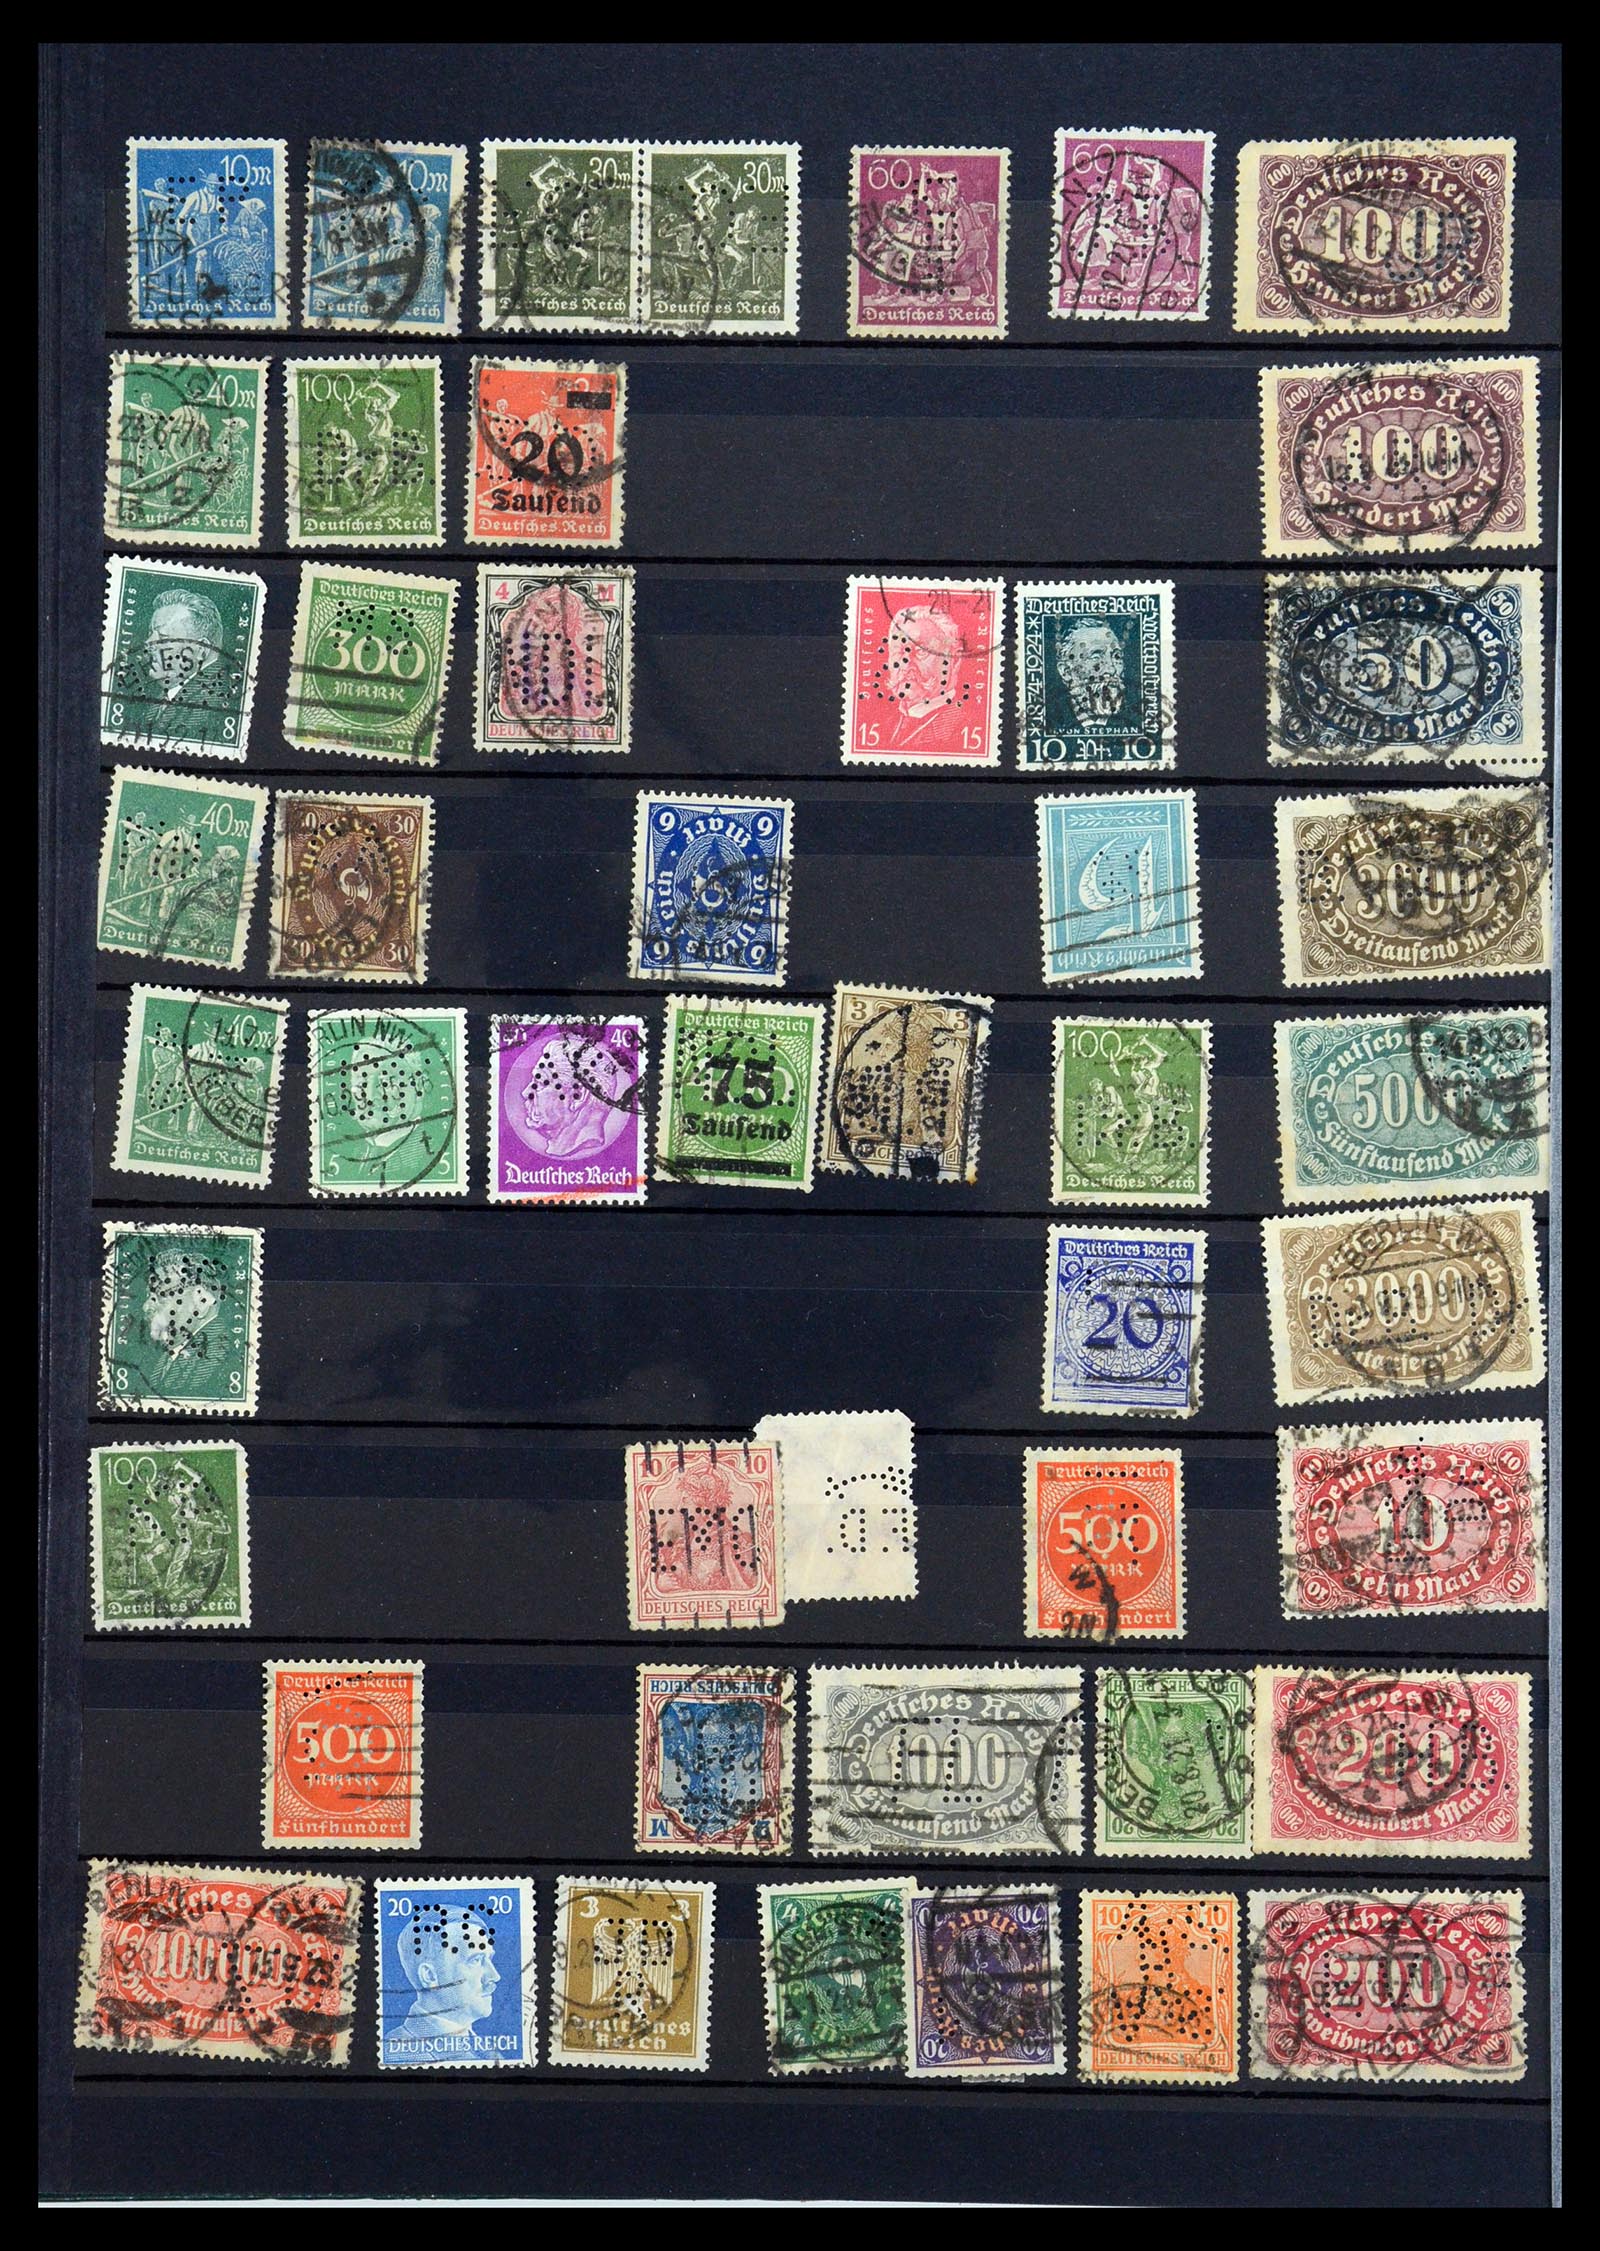 35183 030 - Stamp Collection 35183 German Reich perfins 1880-1945.